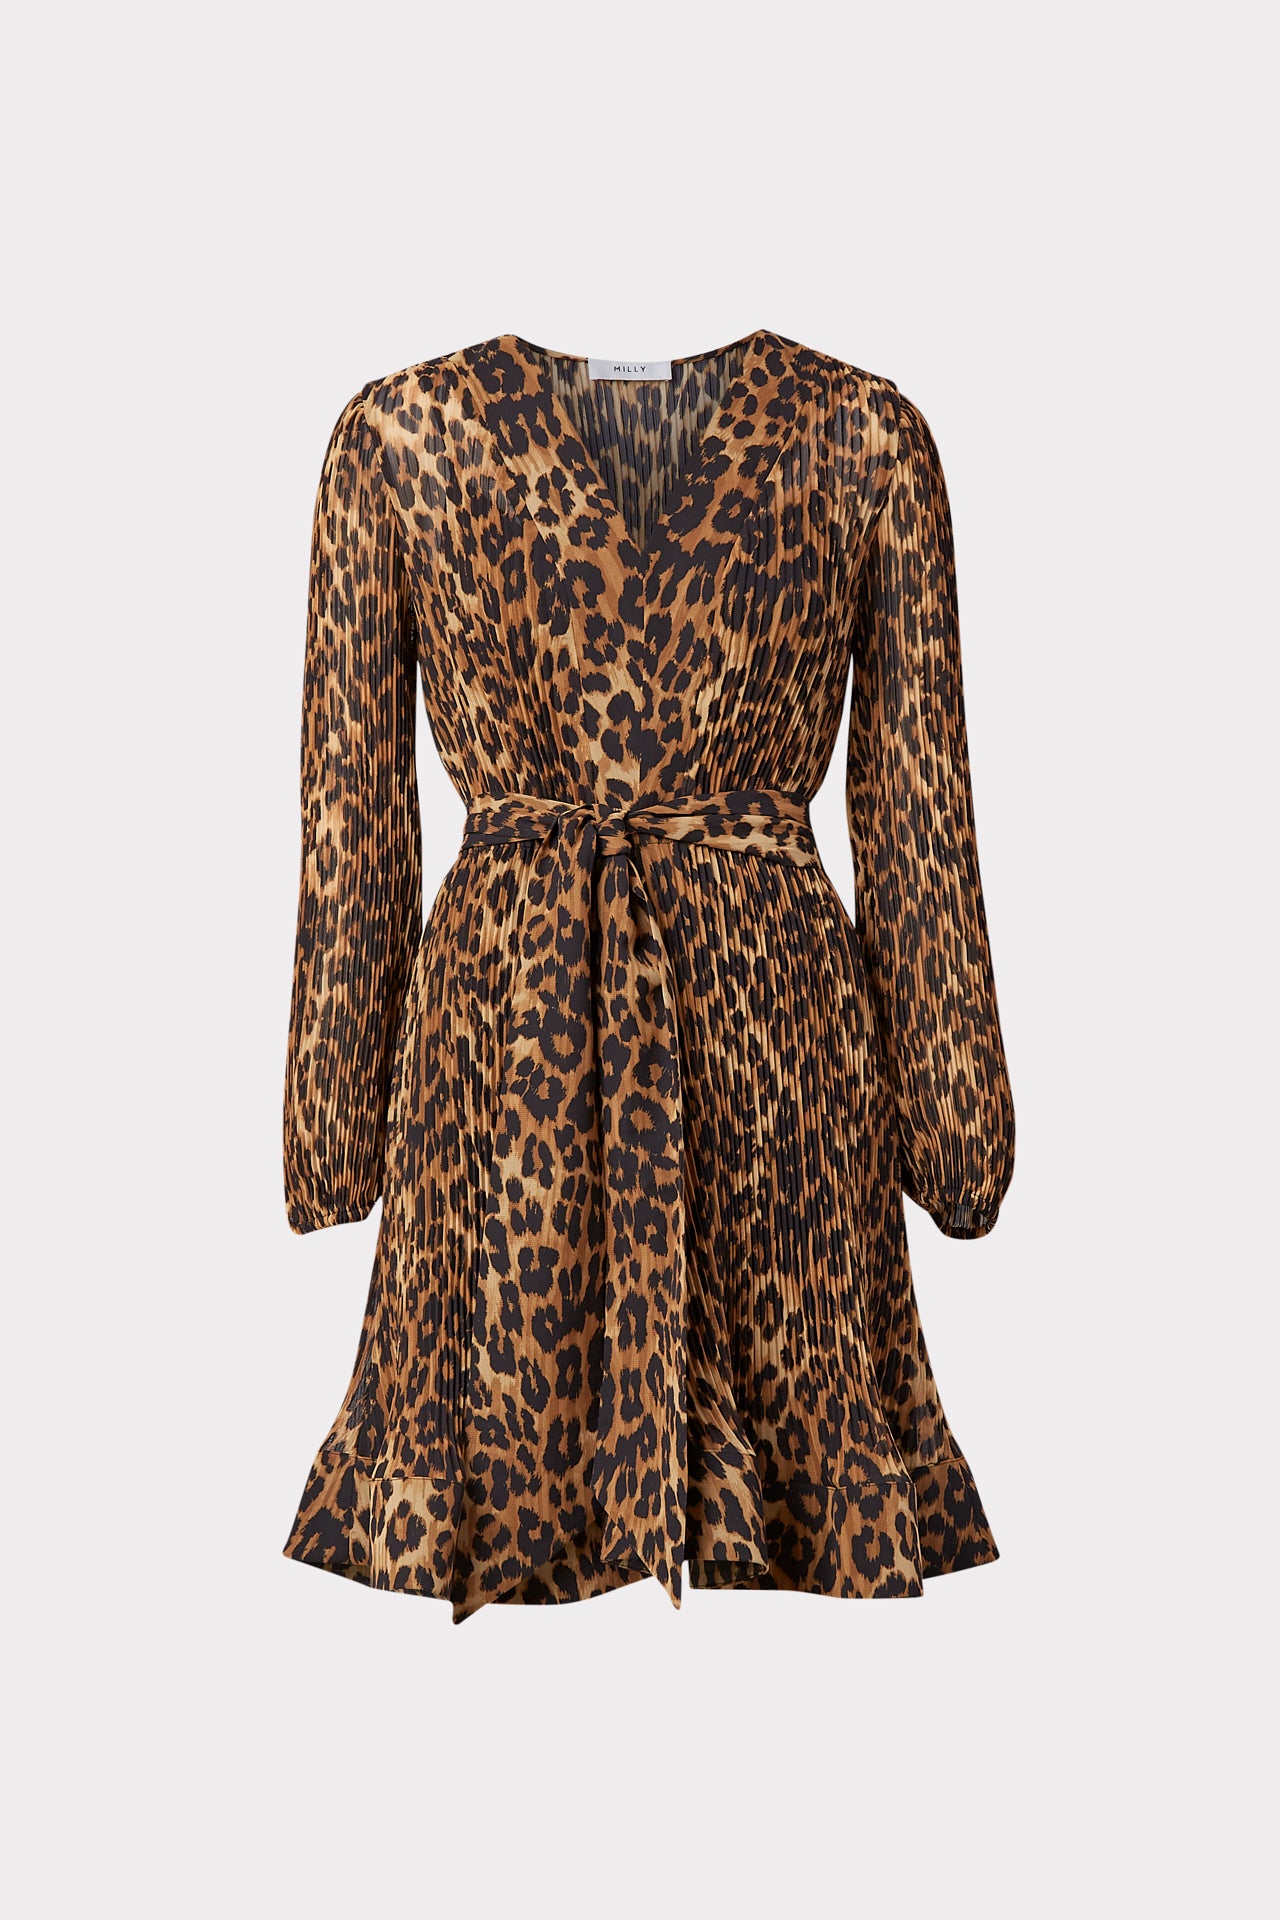 Liv Leopard Print Pleated Dress